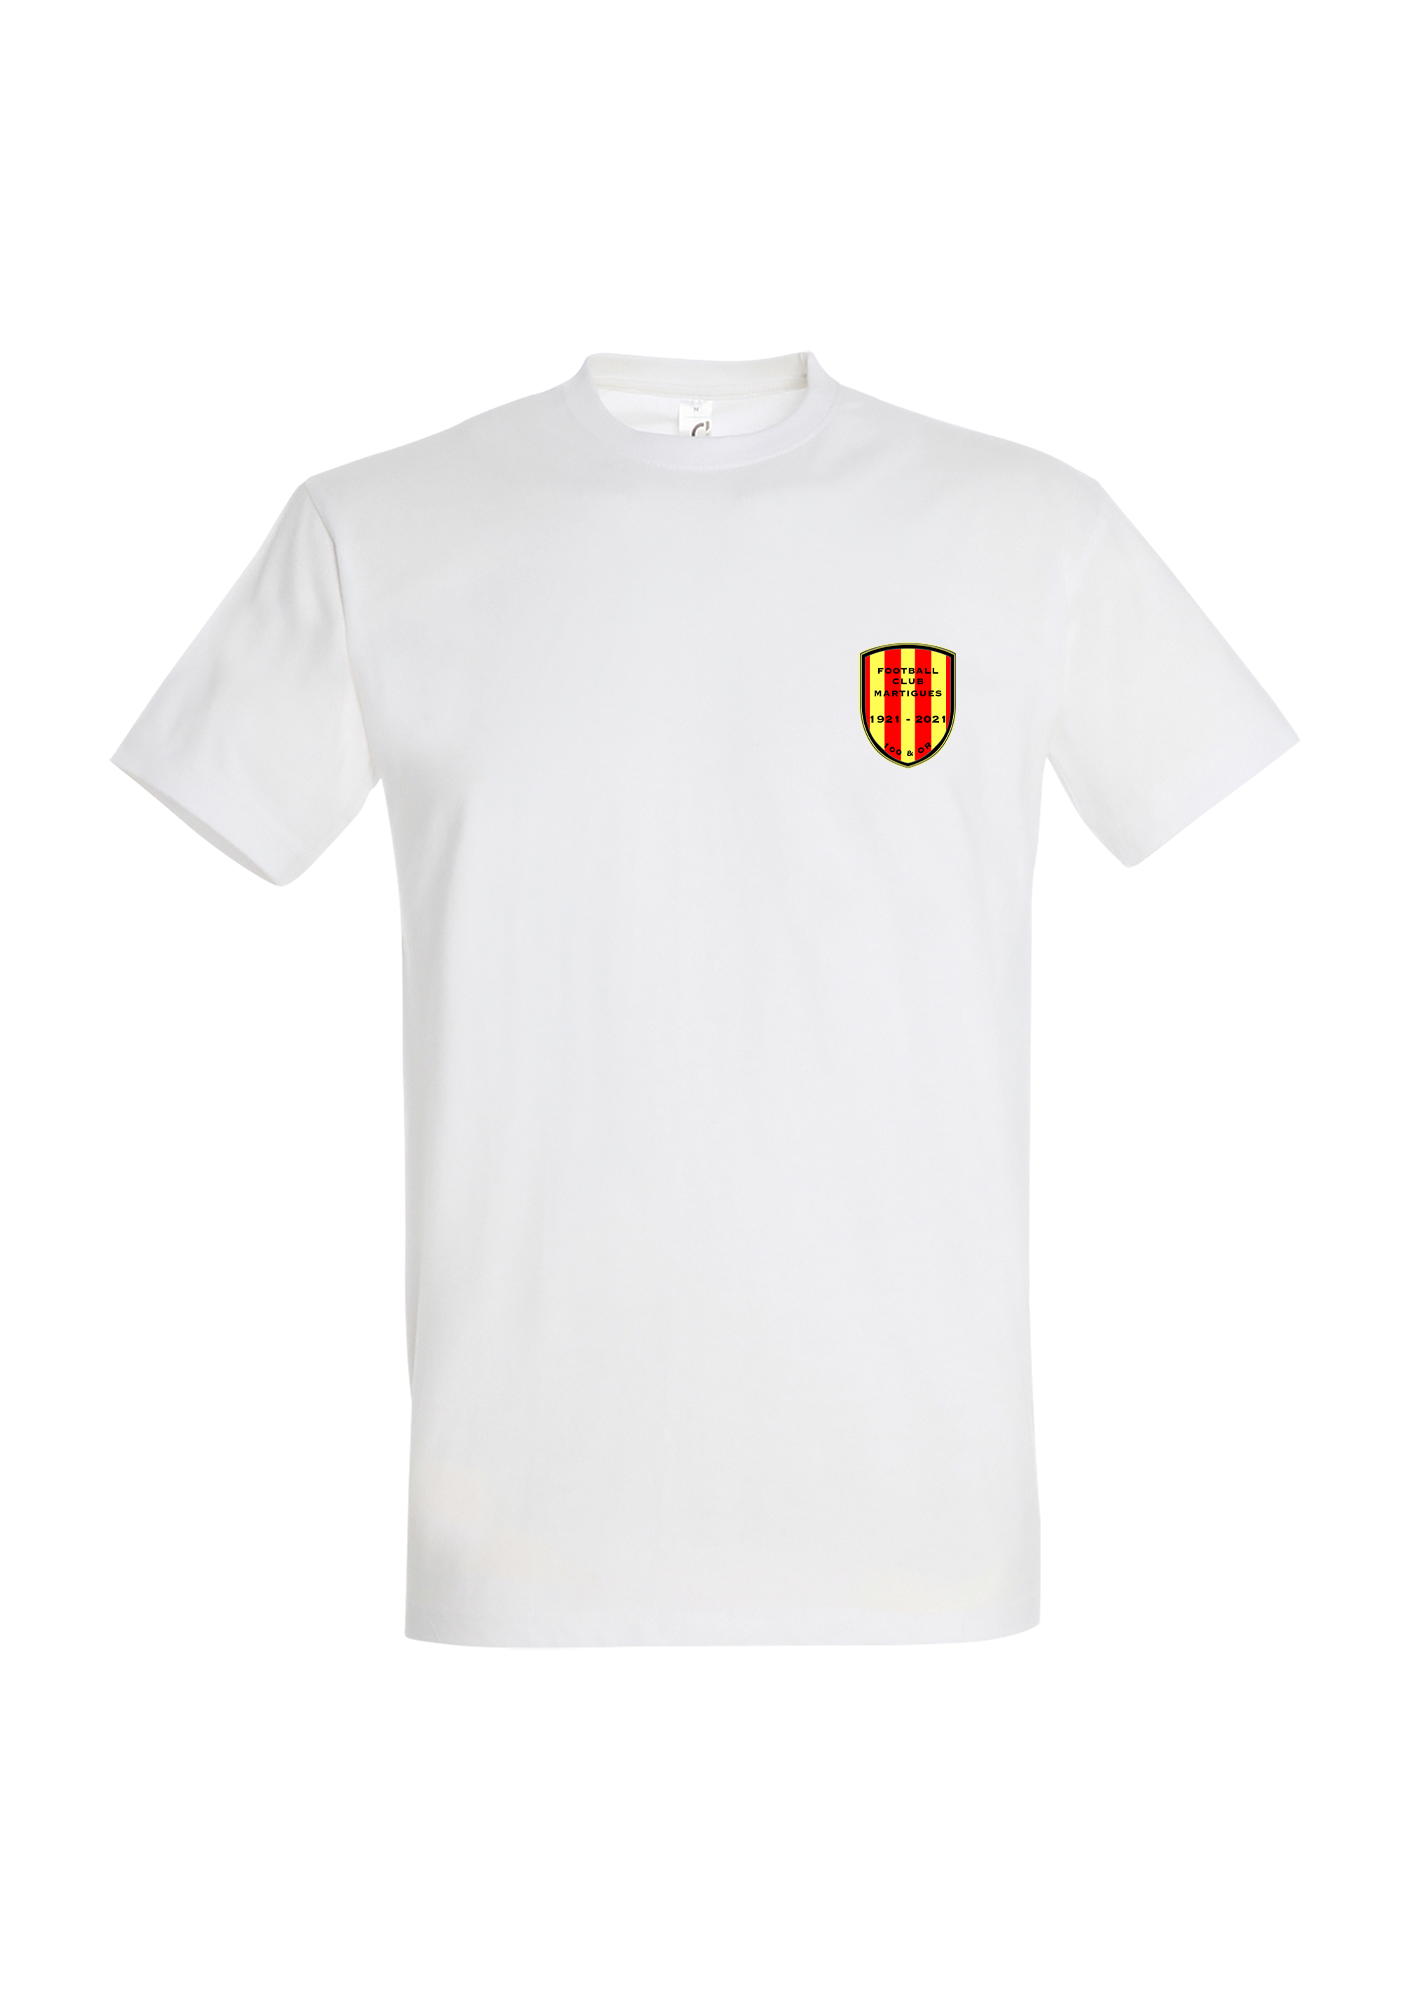 T-shirt Homme premium "100 et Or" Blanc - pn11500102A